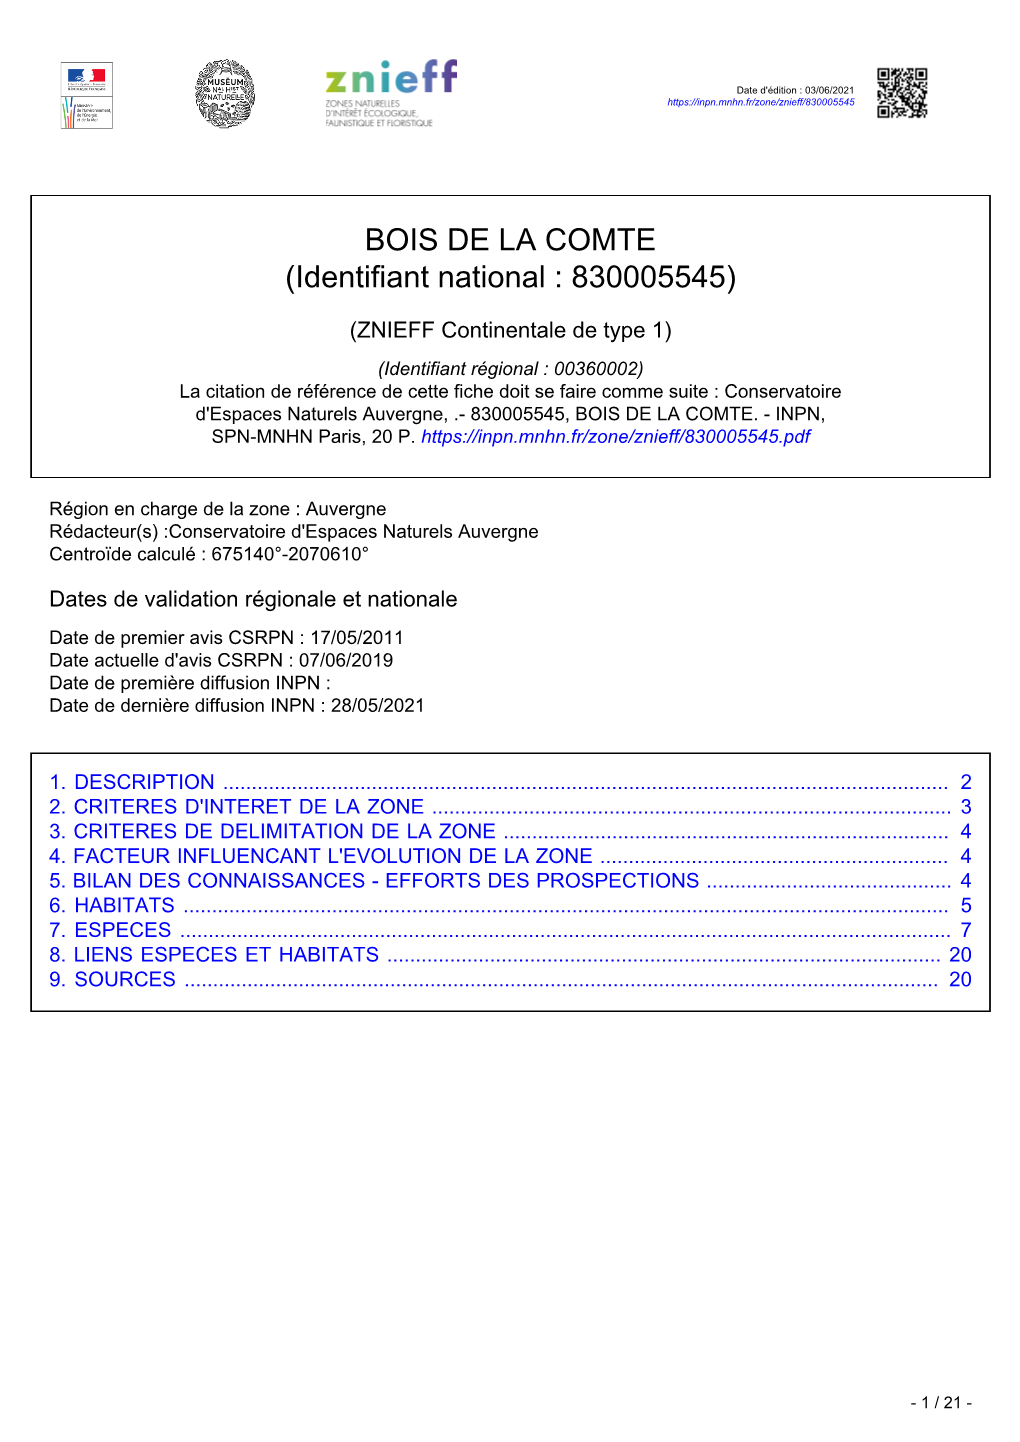 BOIS DE LA COMTE (Identifiant National : 830005545)